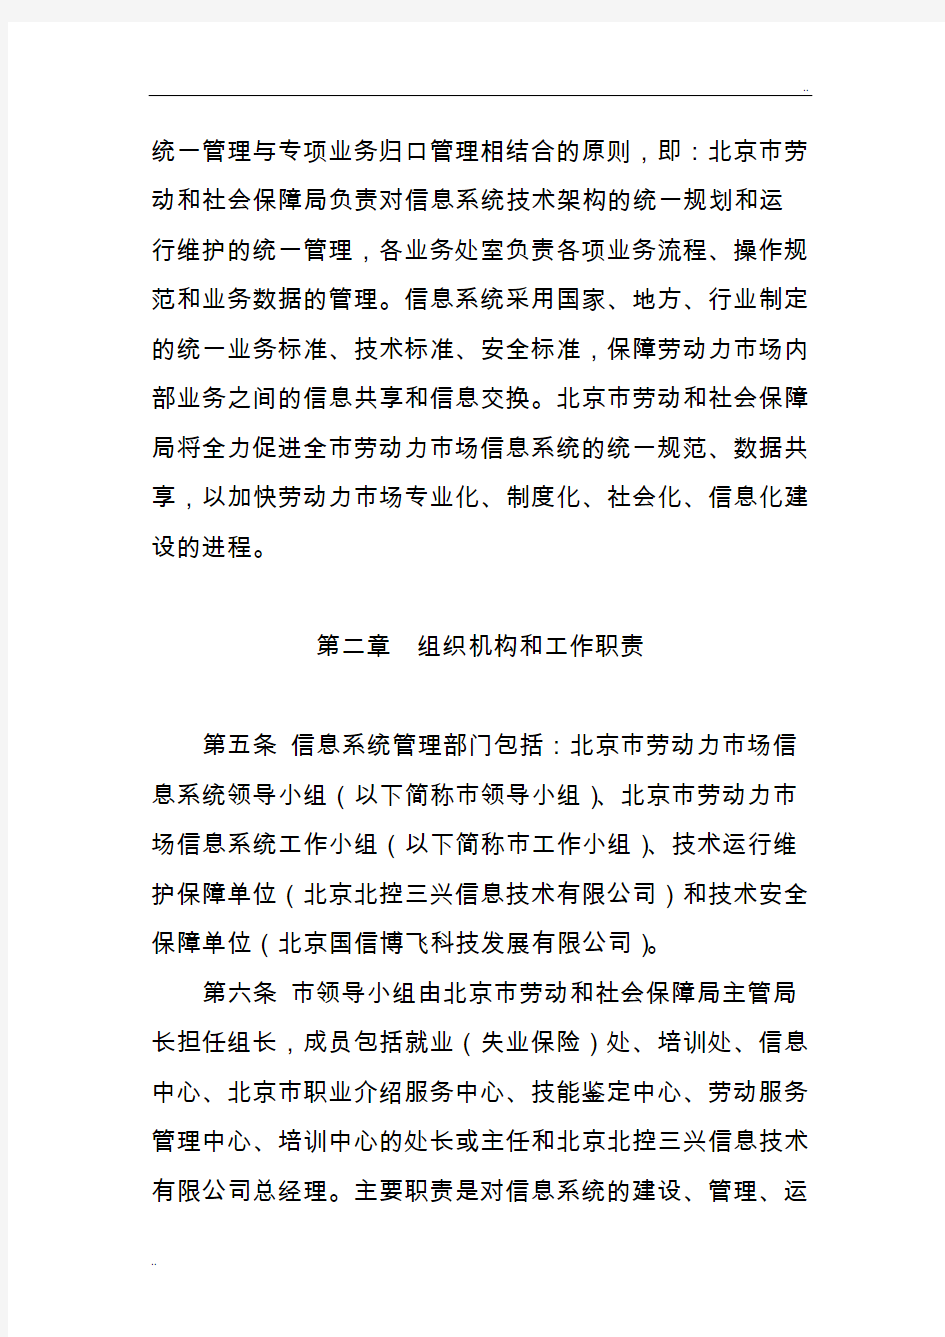 北京市劳动力市场信息系统网络